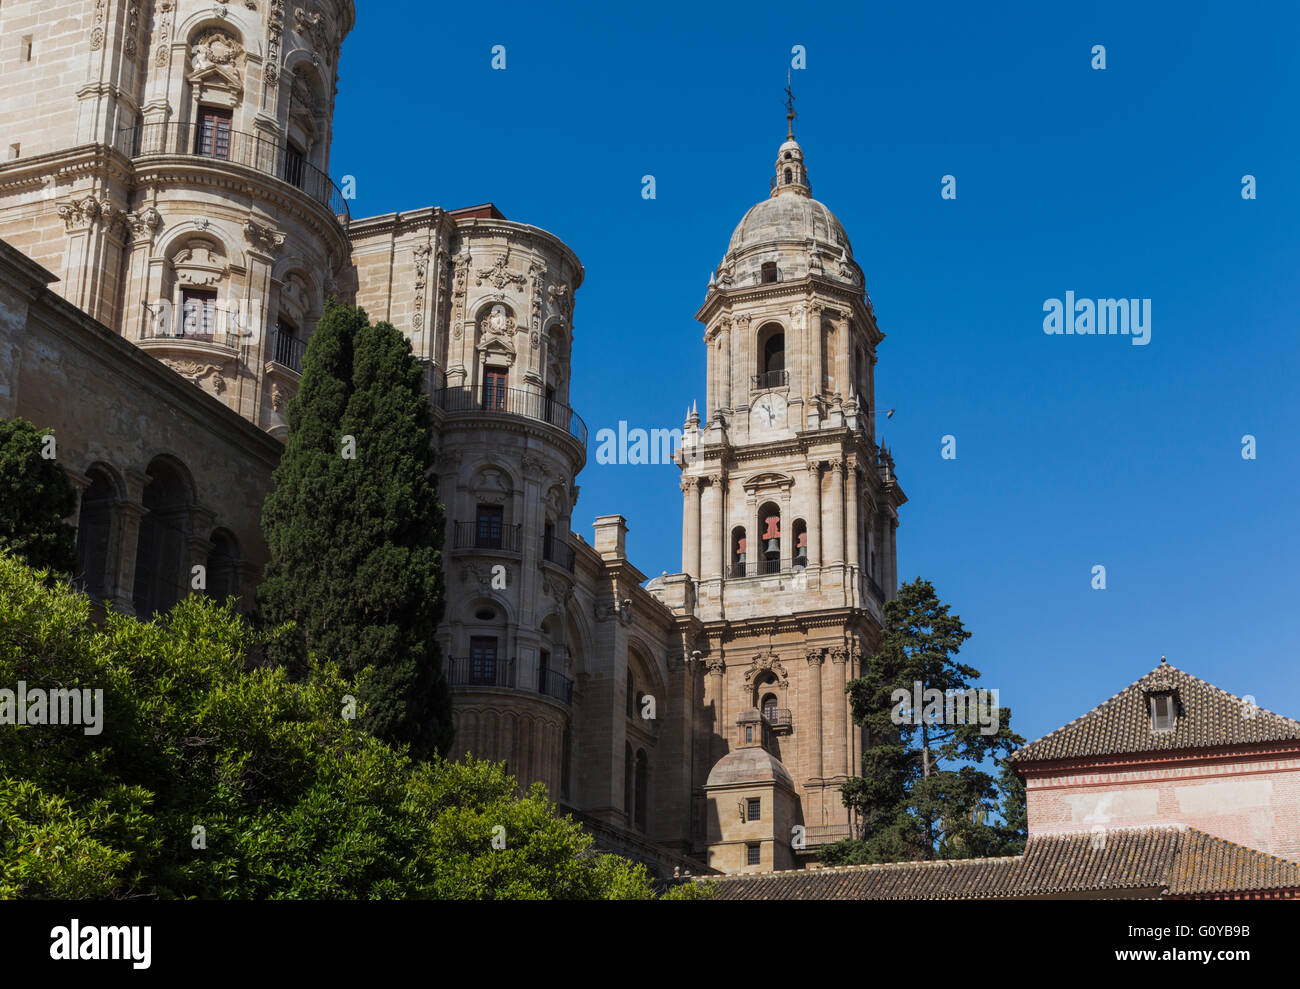 Malaga, la province de Malaga, Costa del Sol, Andalousie, Espagne du sud. La cathédrale de la Renaissance. Banque D'Images